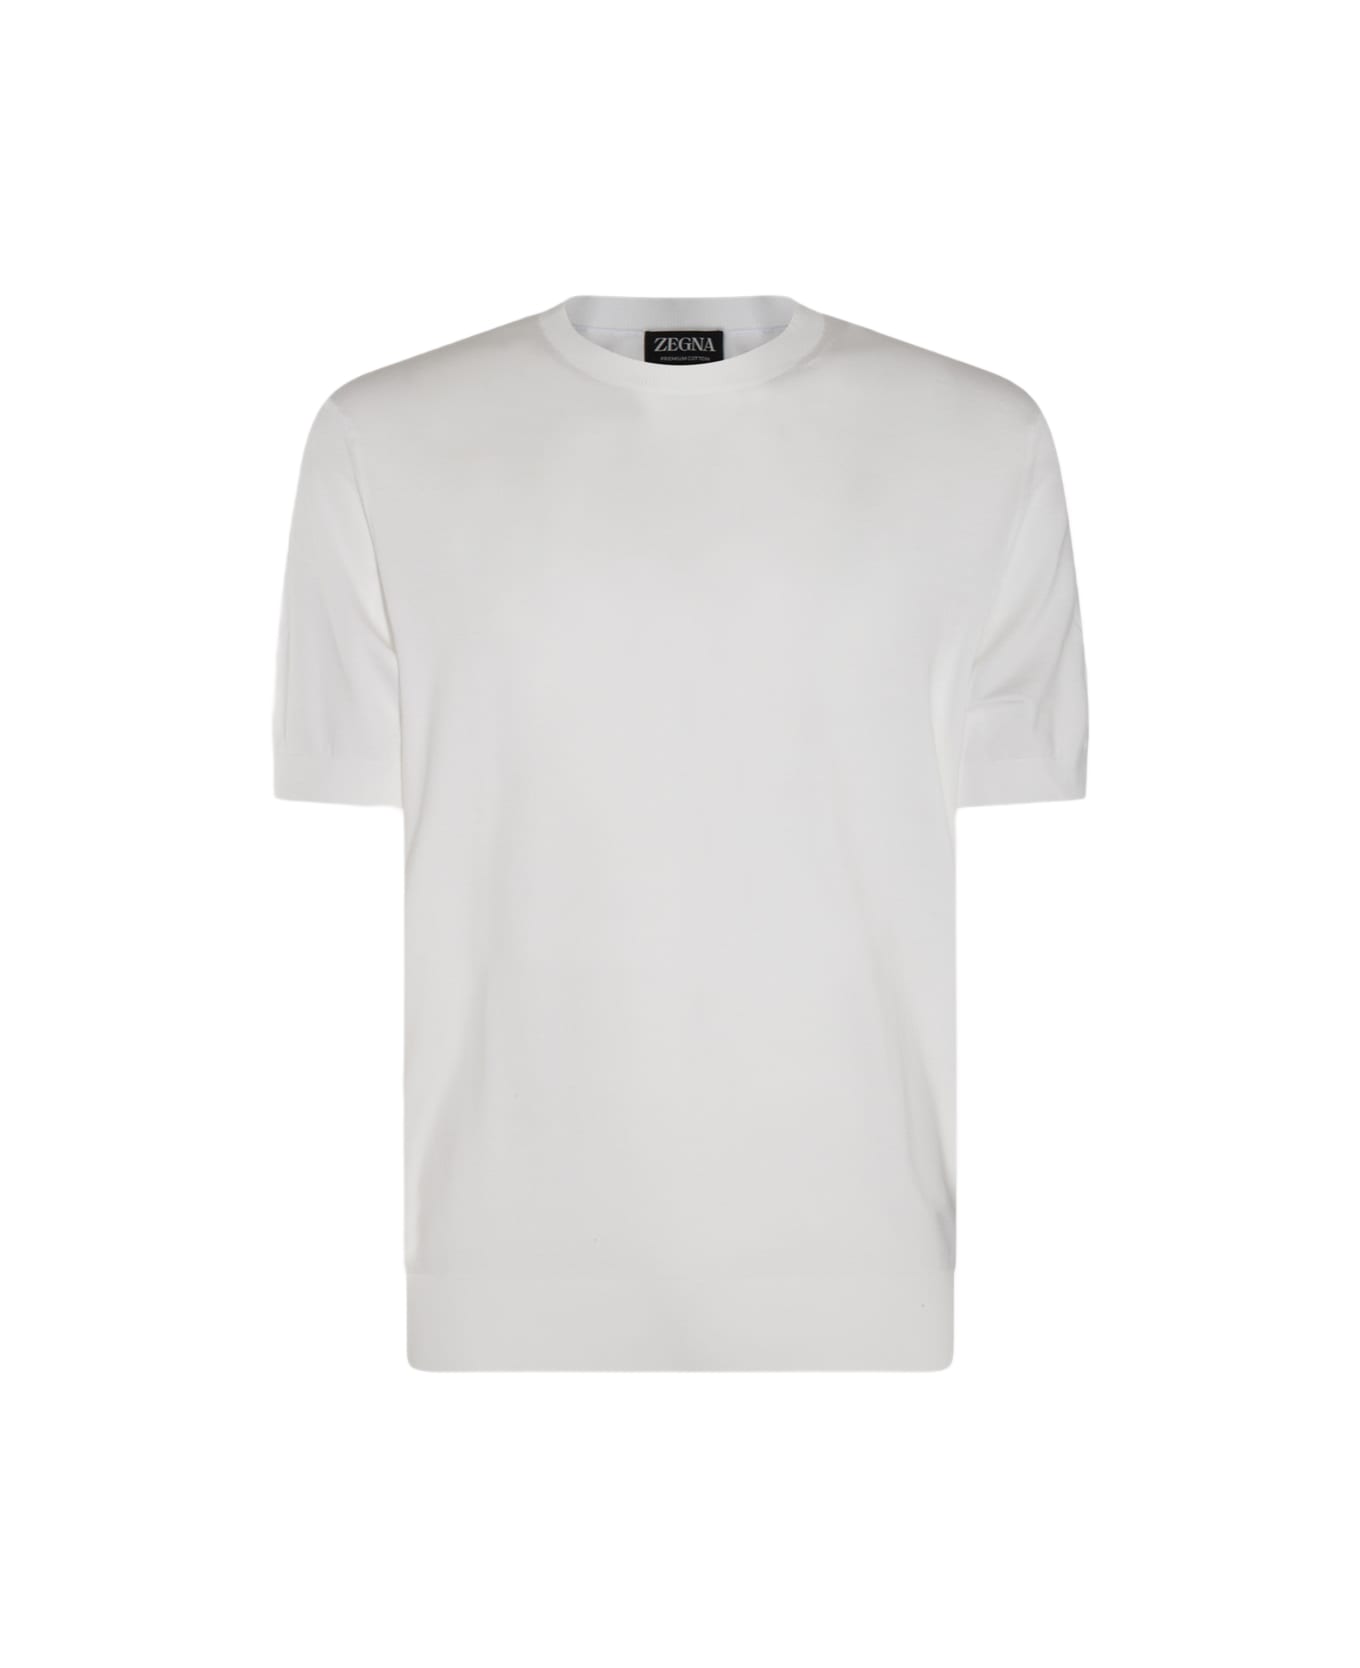 Zegna White Cotton Tshirt - White